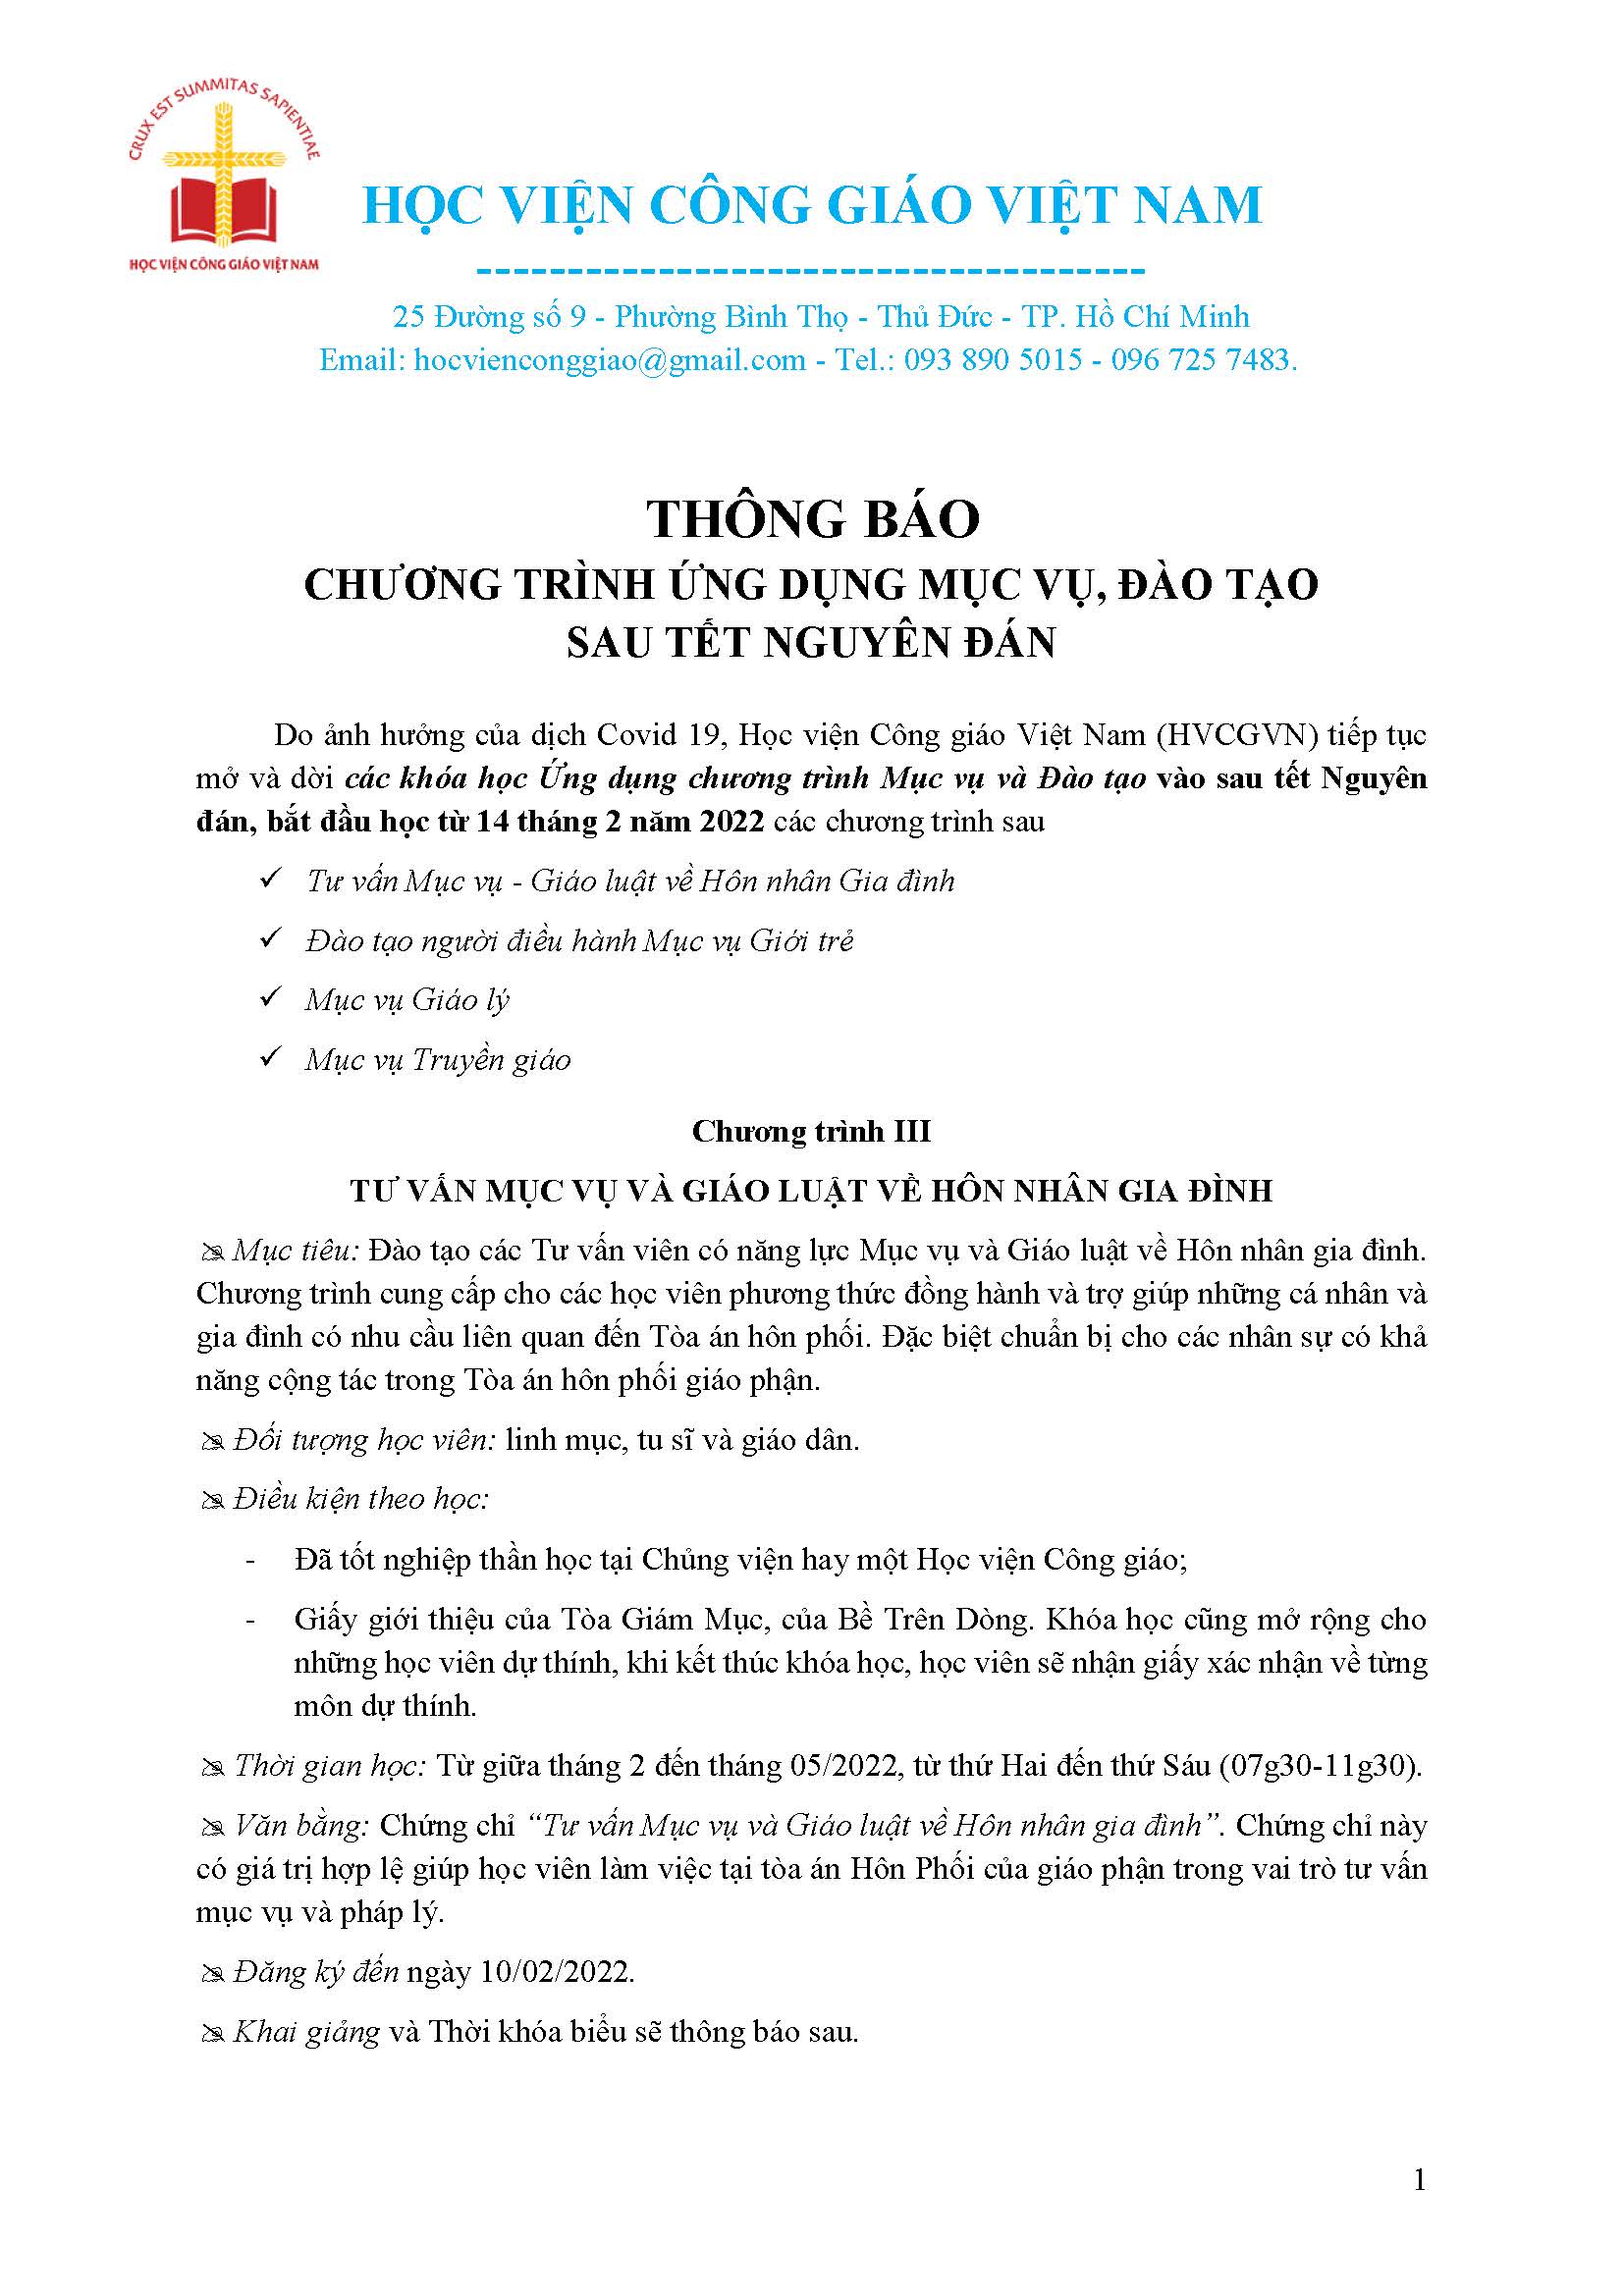 Học viện Công giáo Việt Nam: Thông báo Chương trình Ứng dụng Mục vụ, Đào tạo sau Tết Nguyên Đán